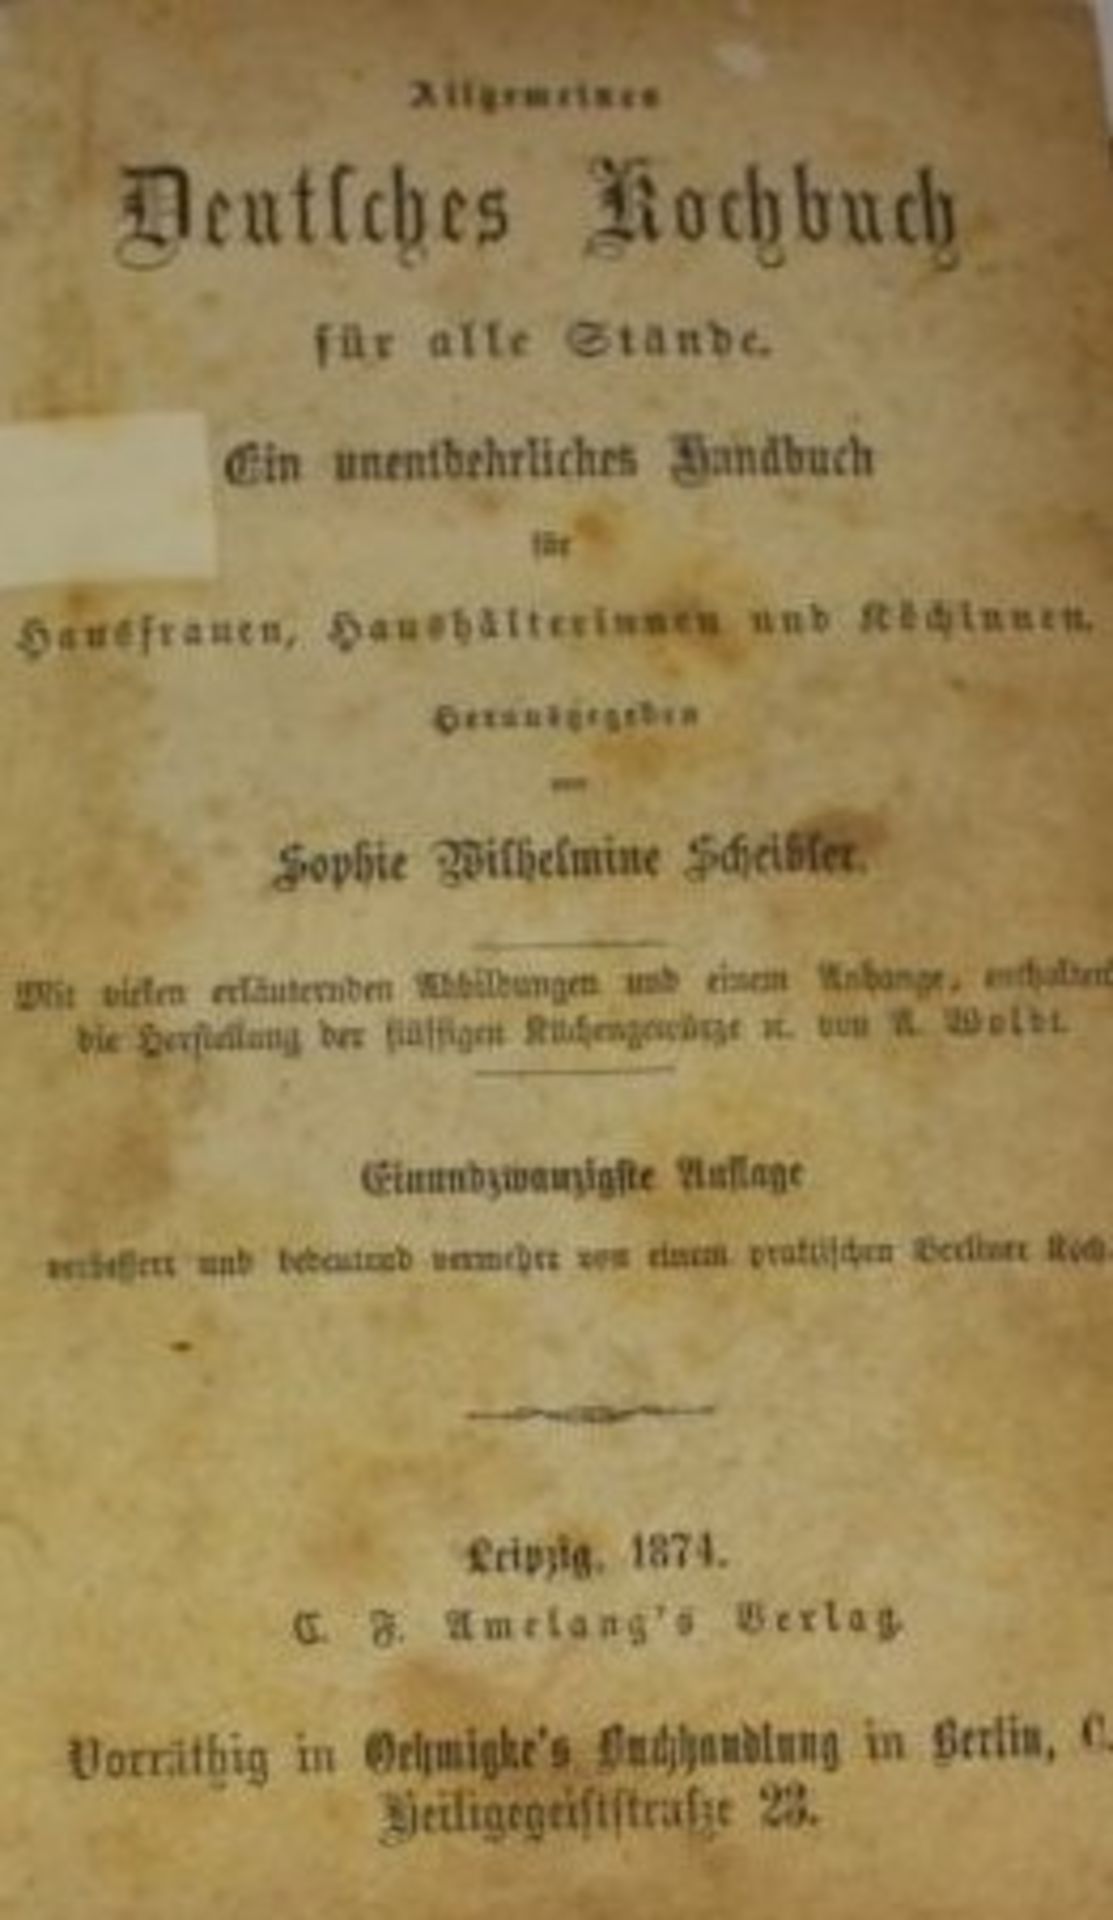 Scheibler, Sophie Wilhelmine, Allgemeines Deutsches Kochbuch für alle Stände, 1874, Alters-u. - Image 3 of 3